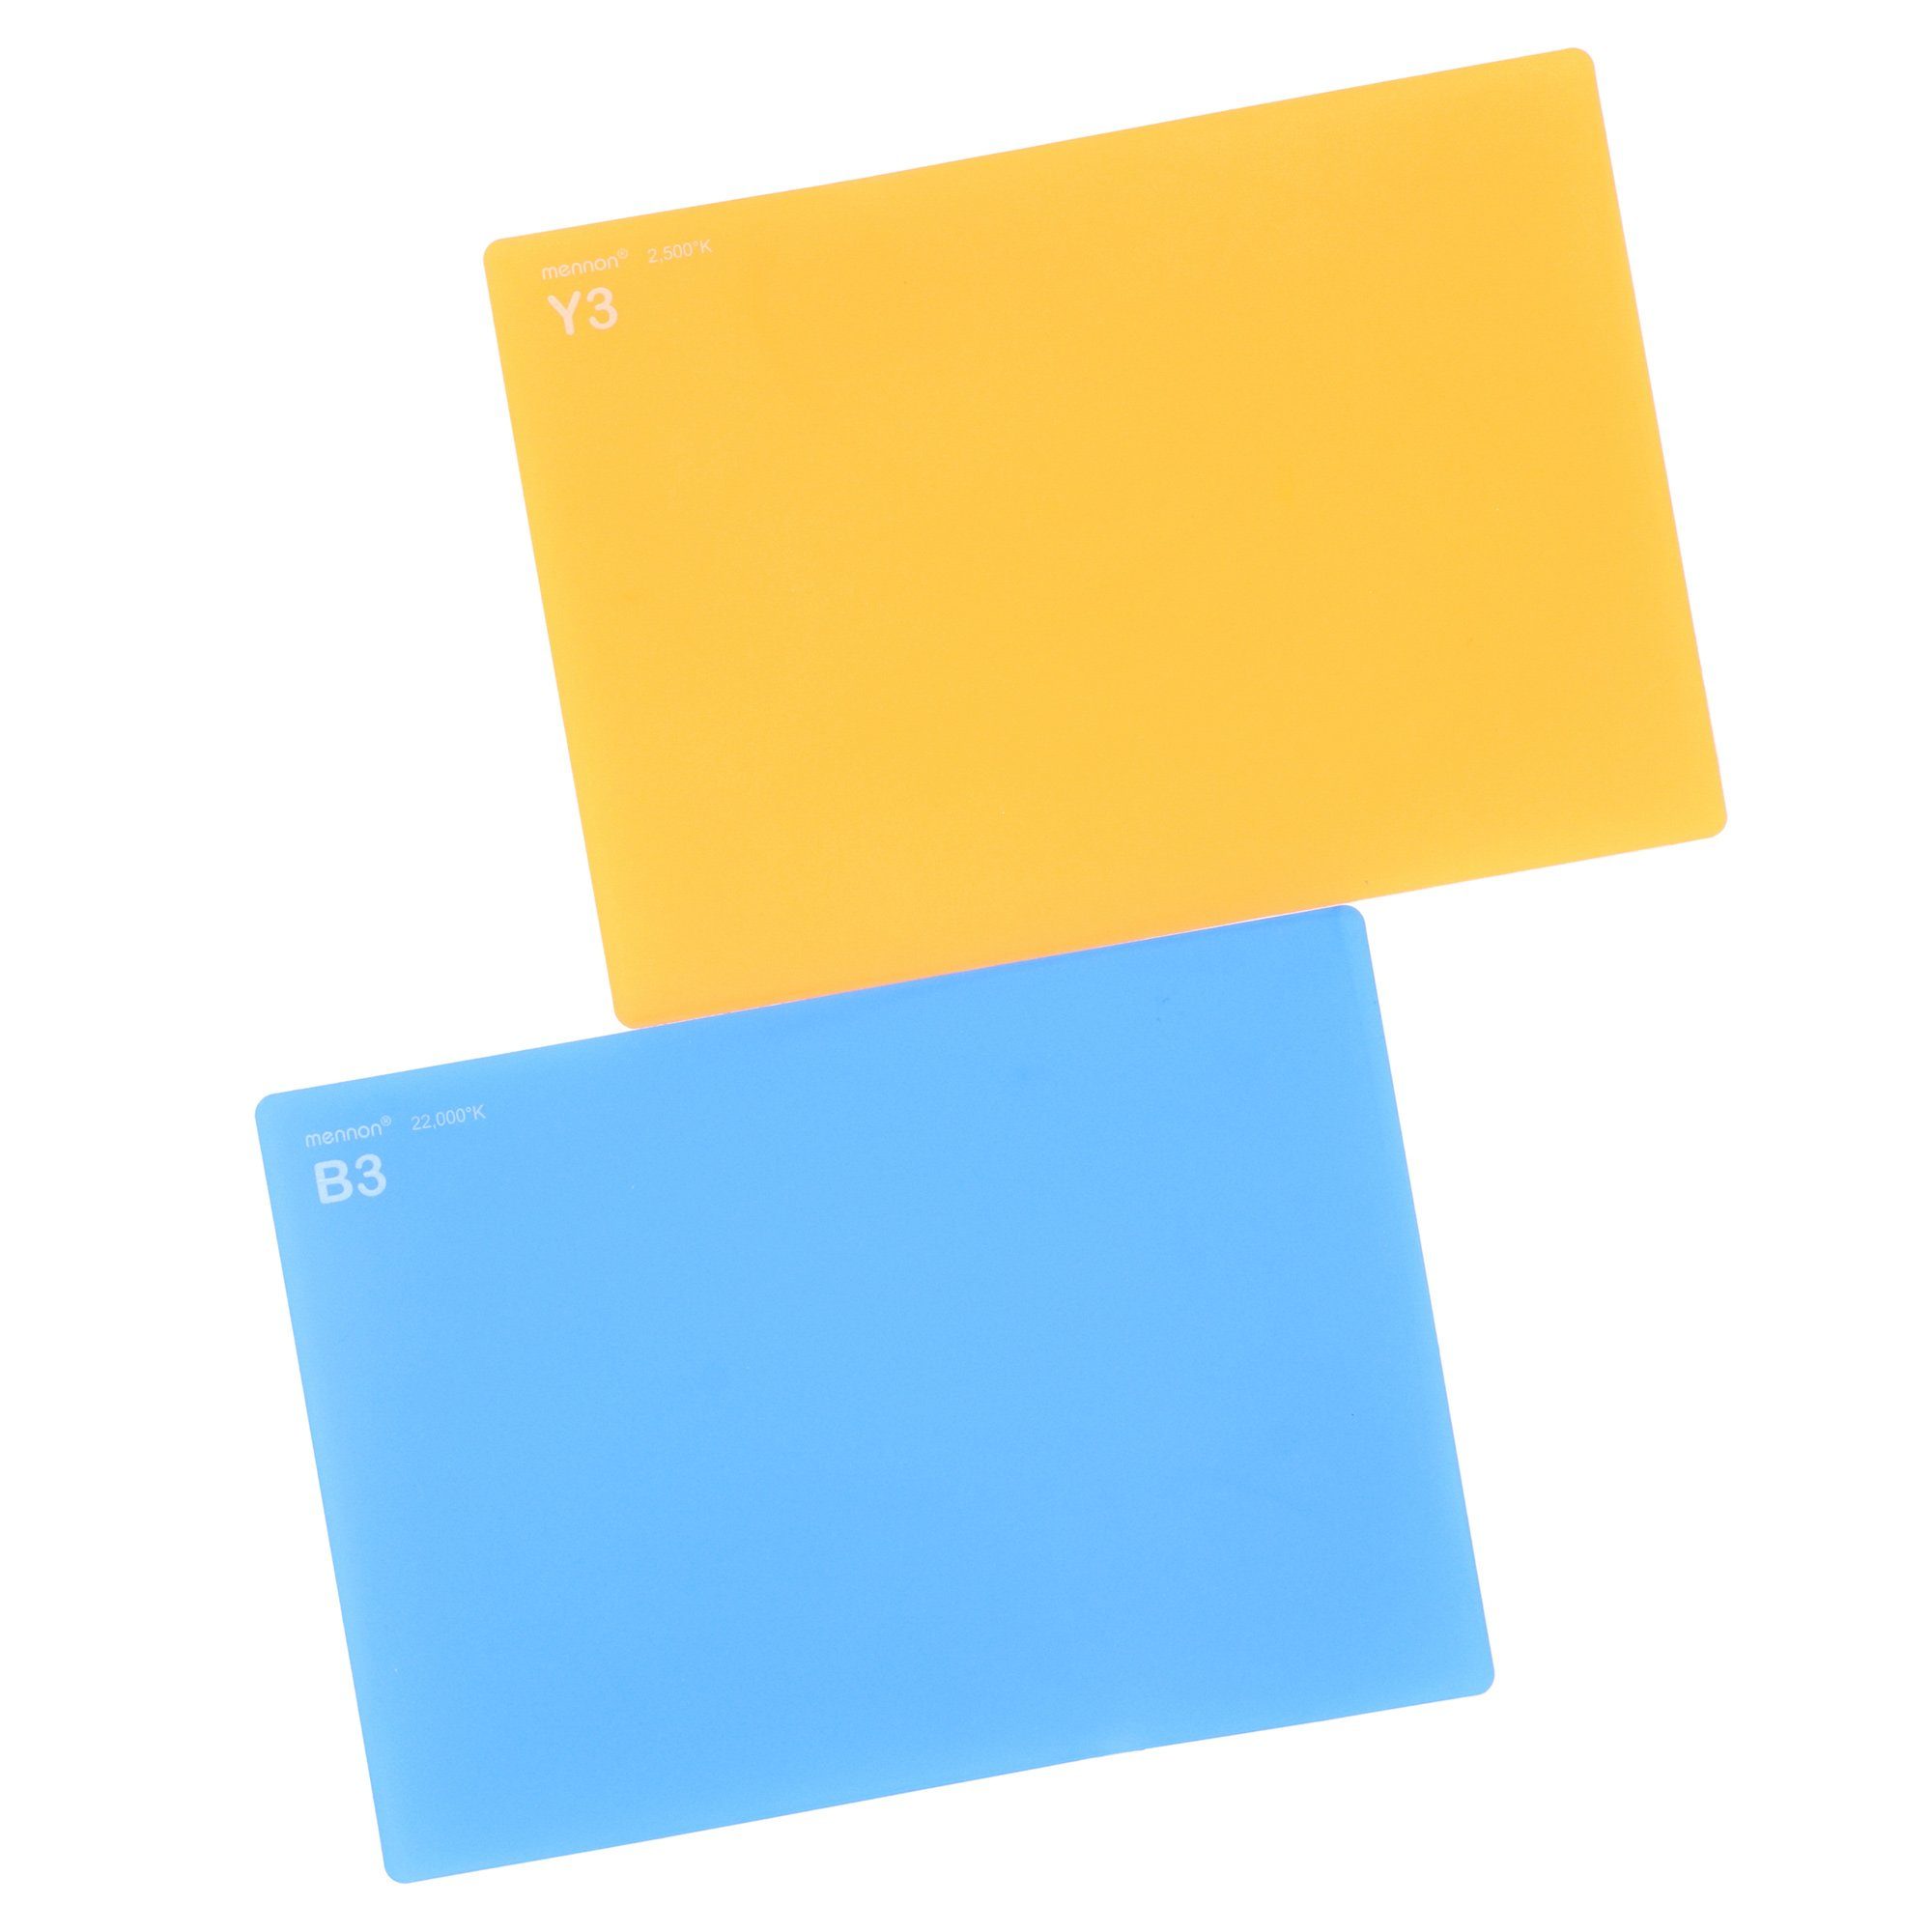 Karten-Set für und Farbtemperatur ayex Objektivzubehör 7-teiliges Weißabgleich